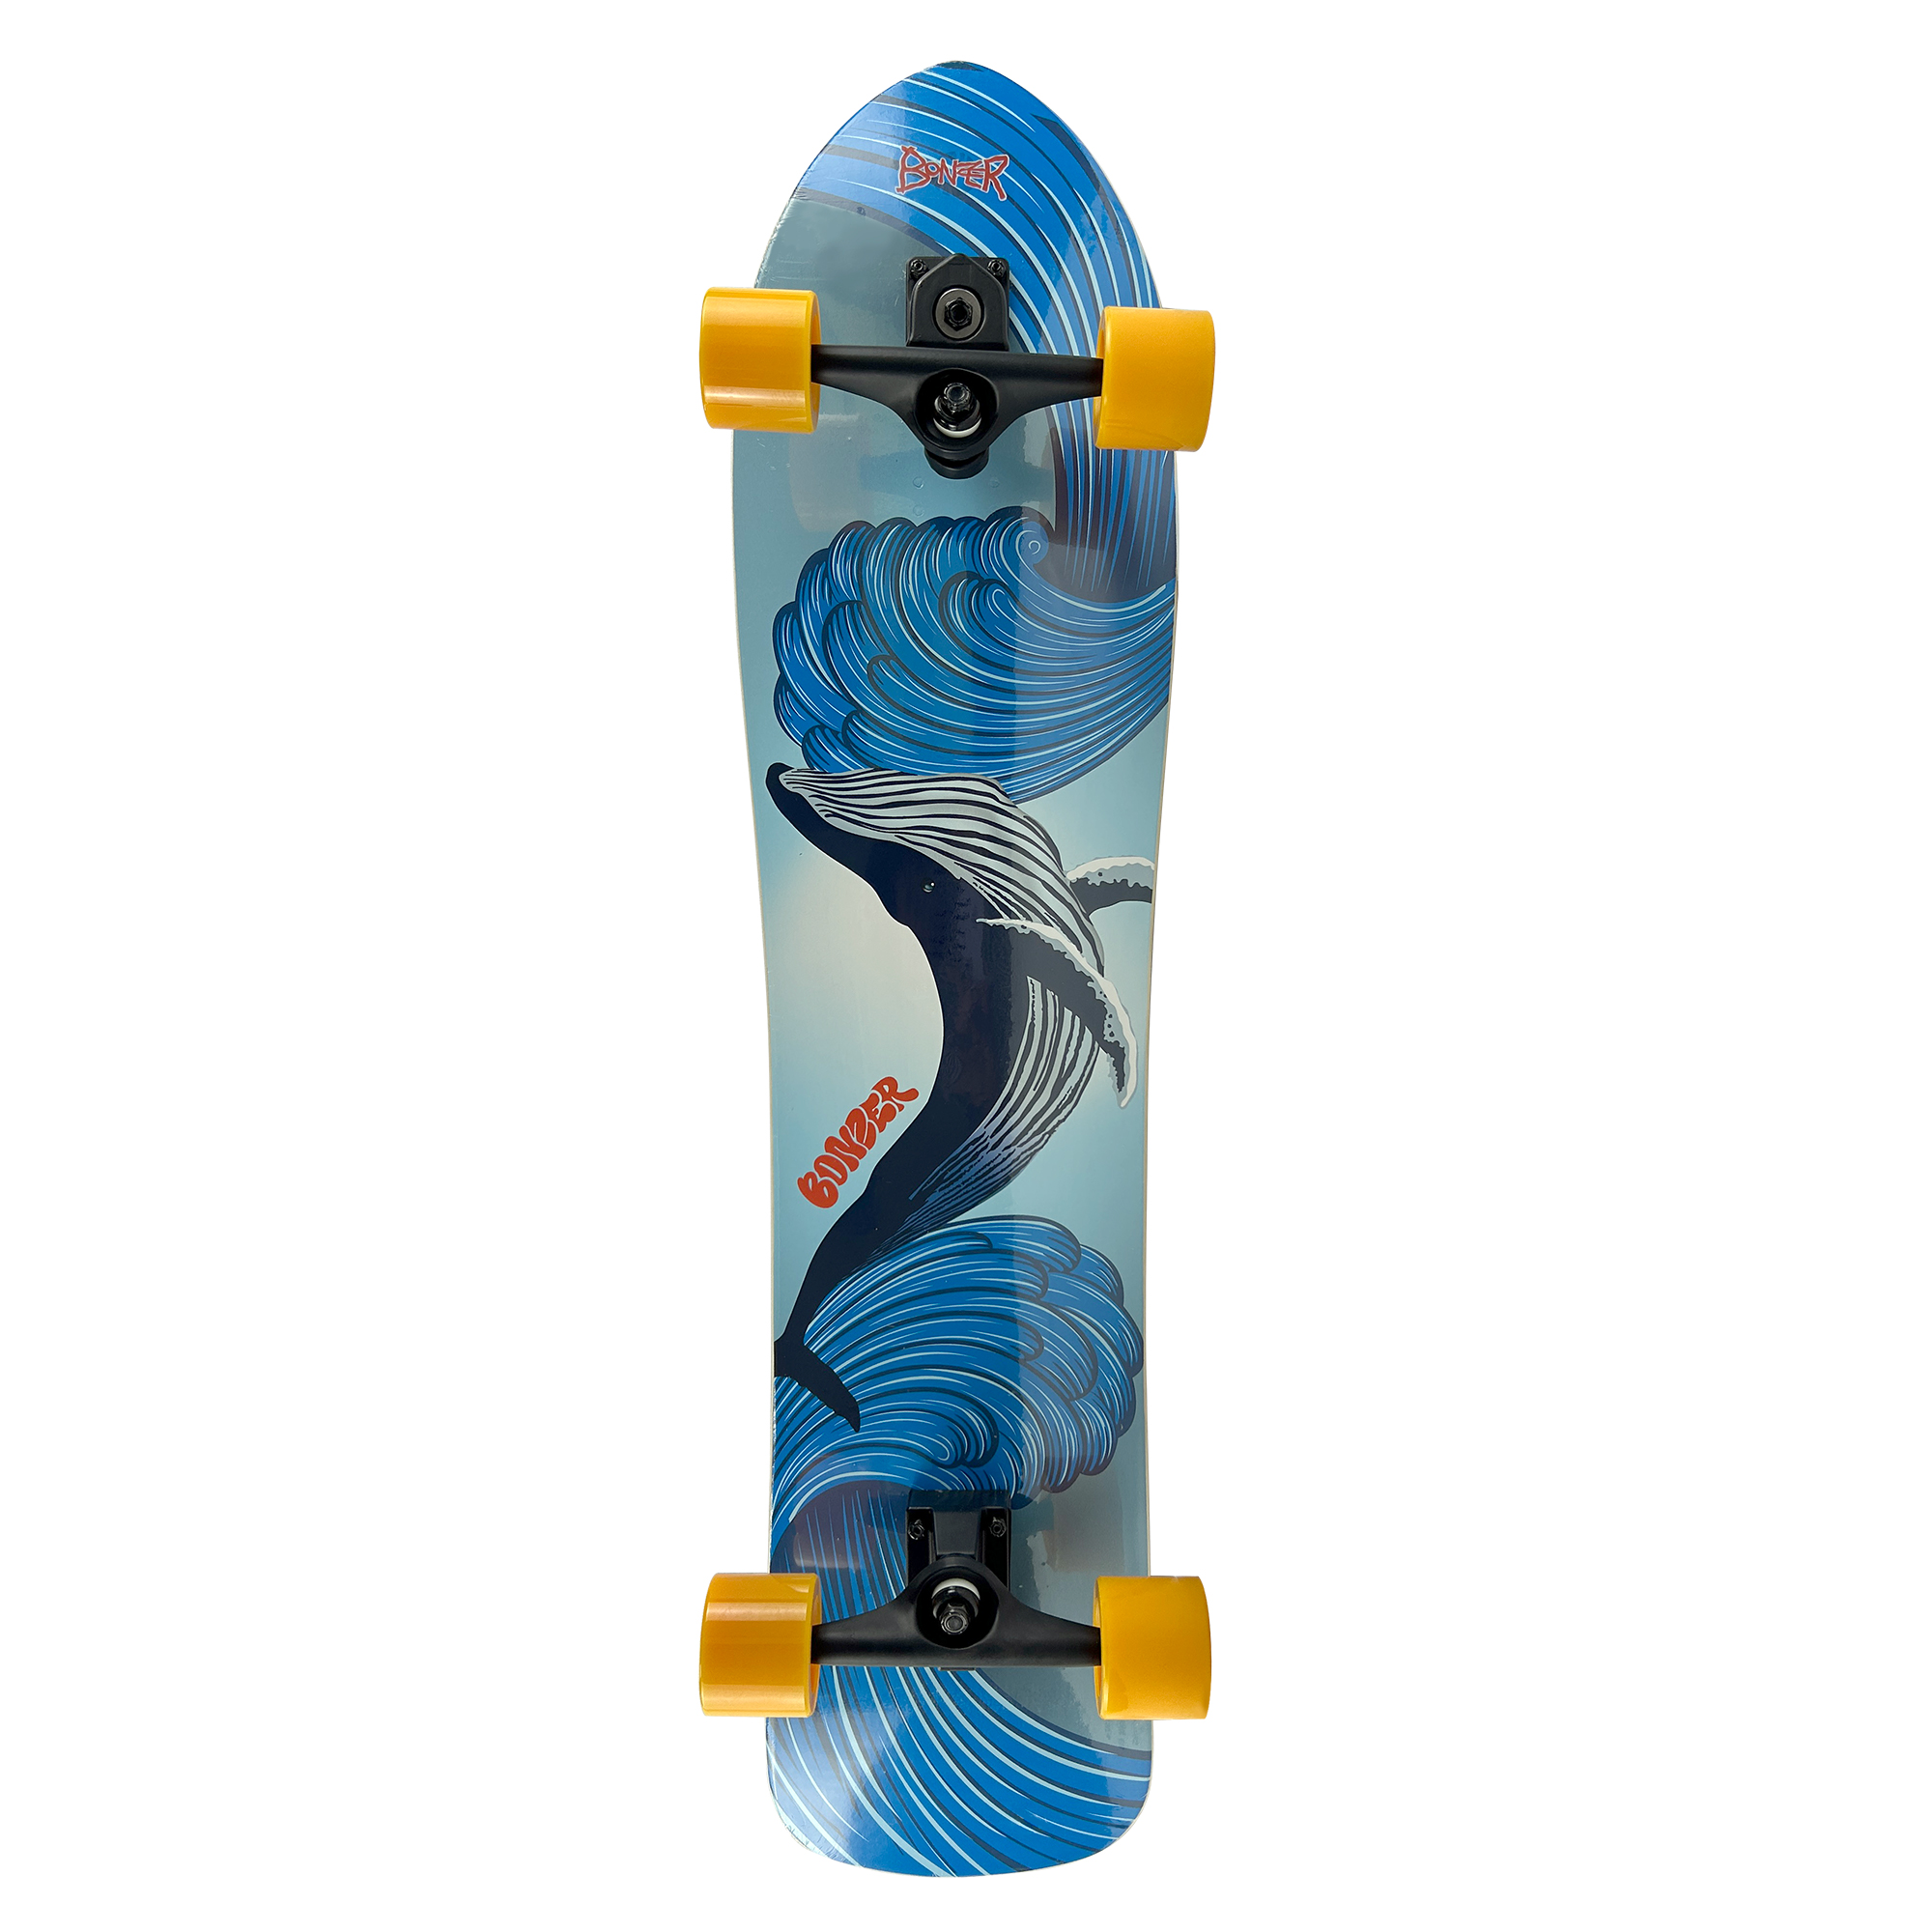 40" Surf Skateboard Complete